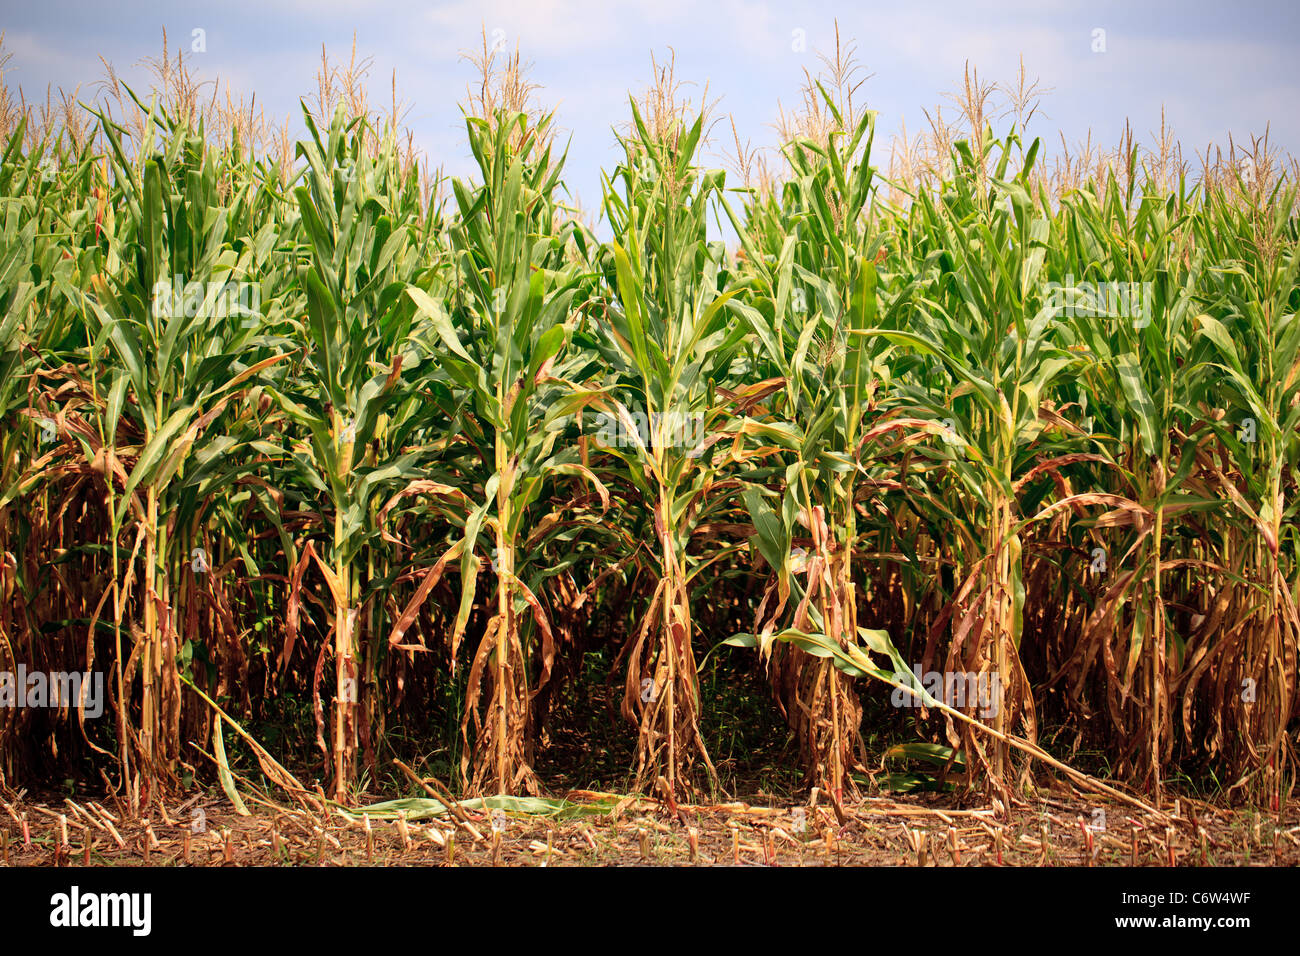 Field of corn maize Stock Photo